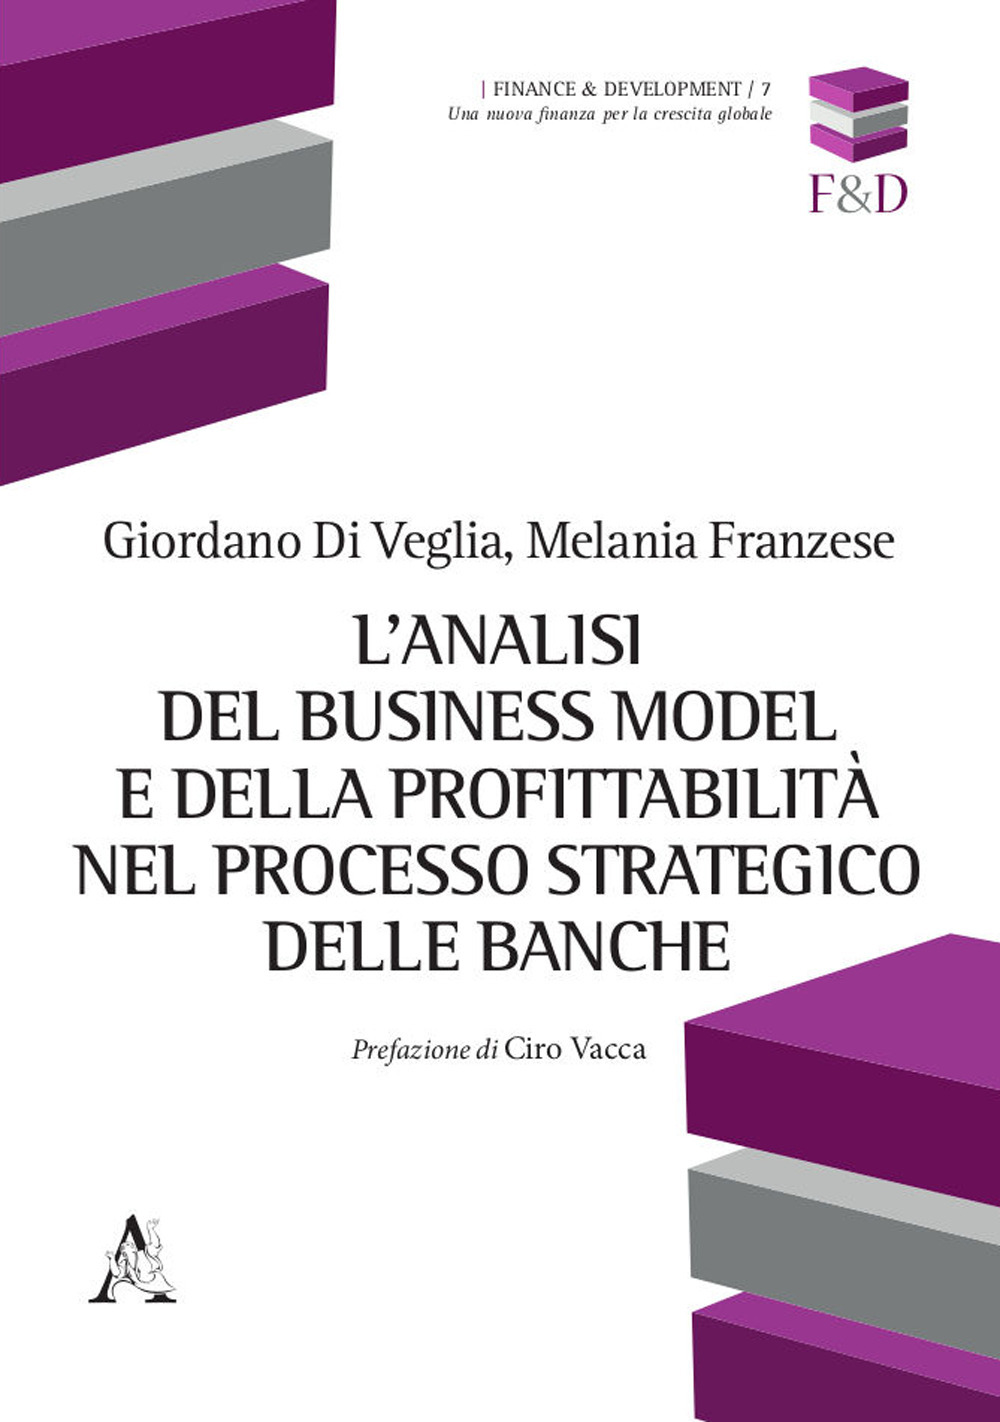 L'analisi del business model e della profittabilità nel processo strategico delle banche